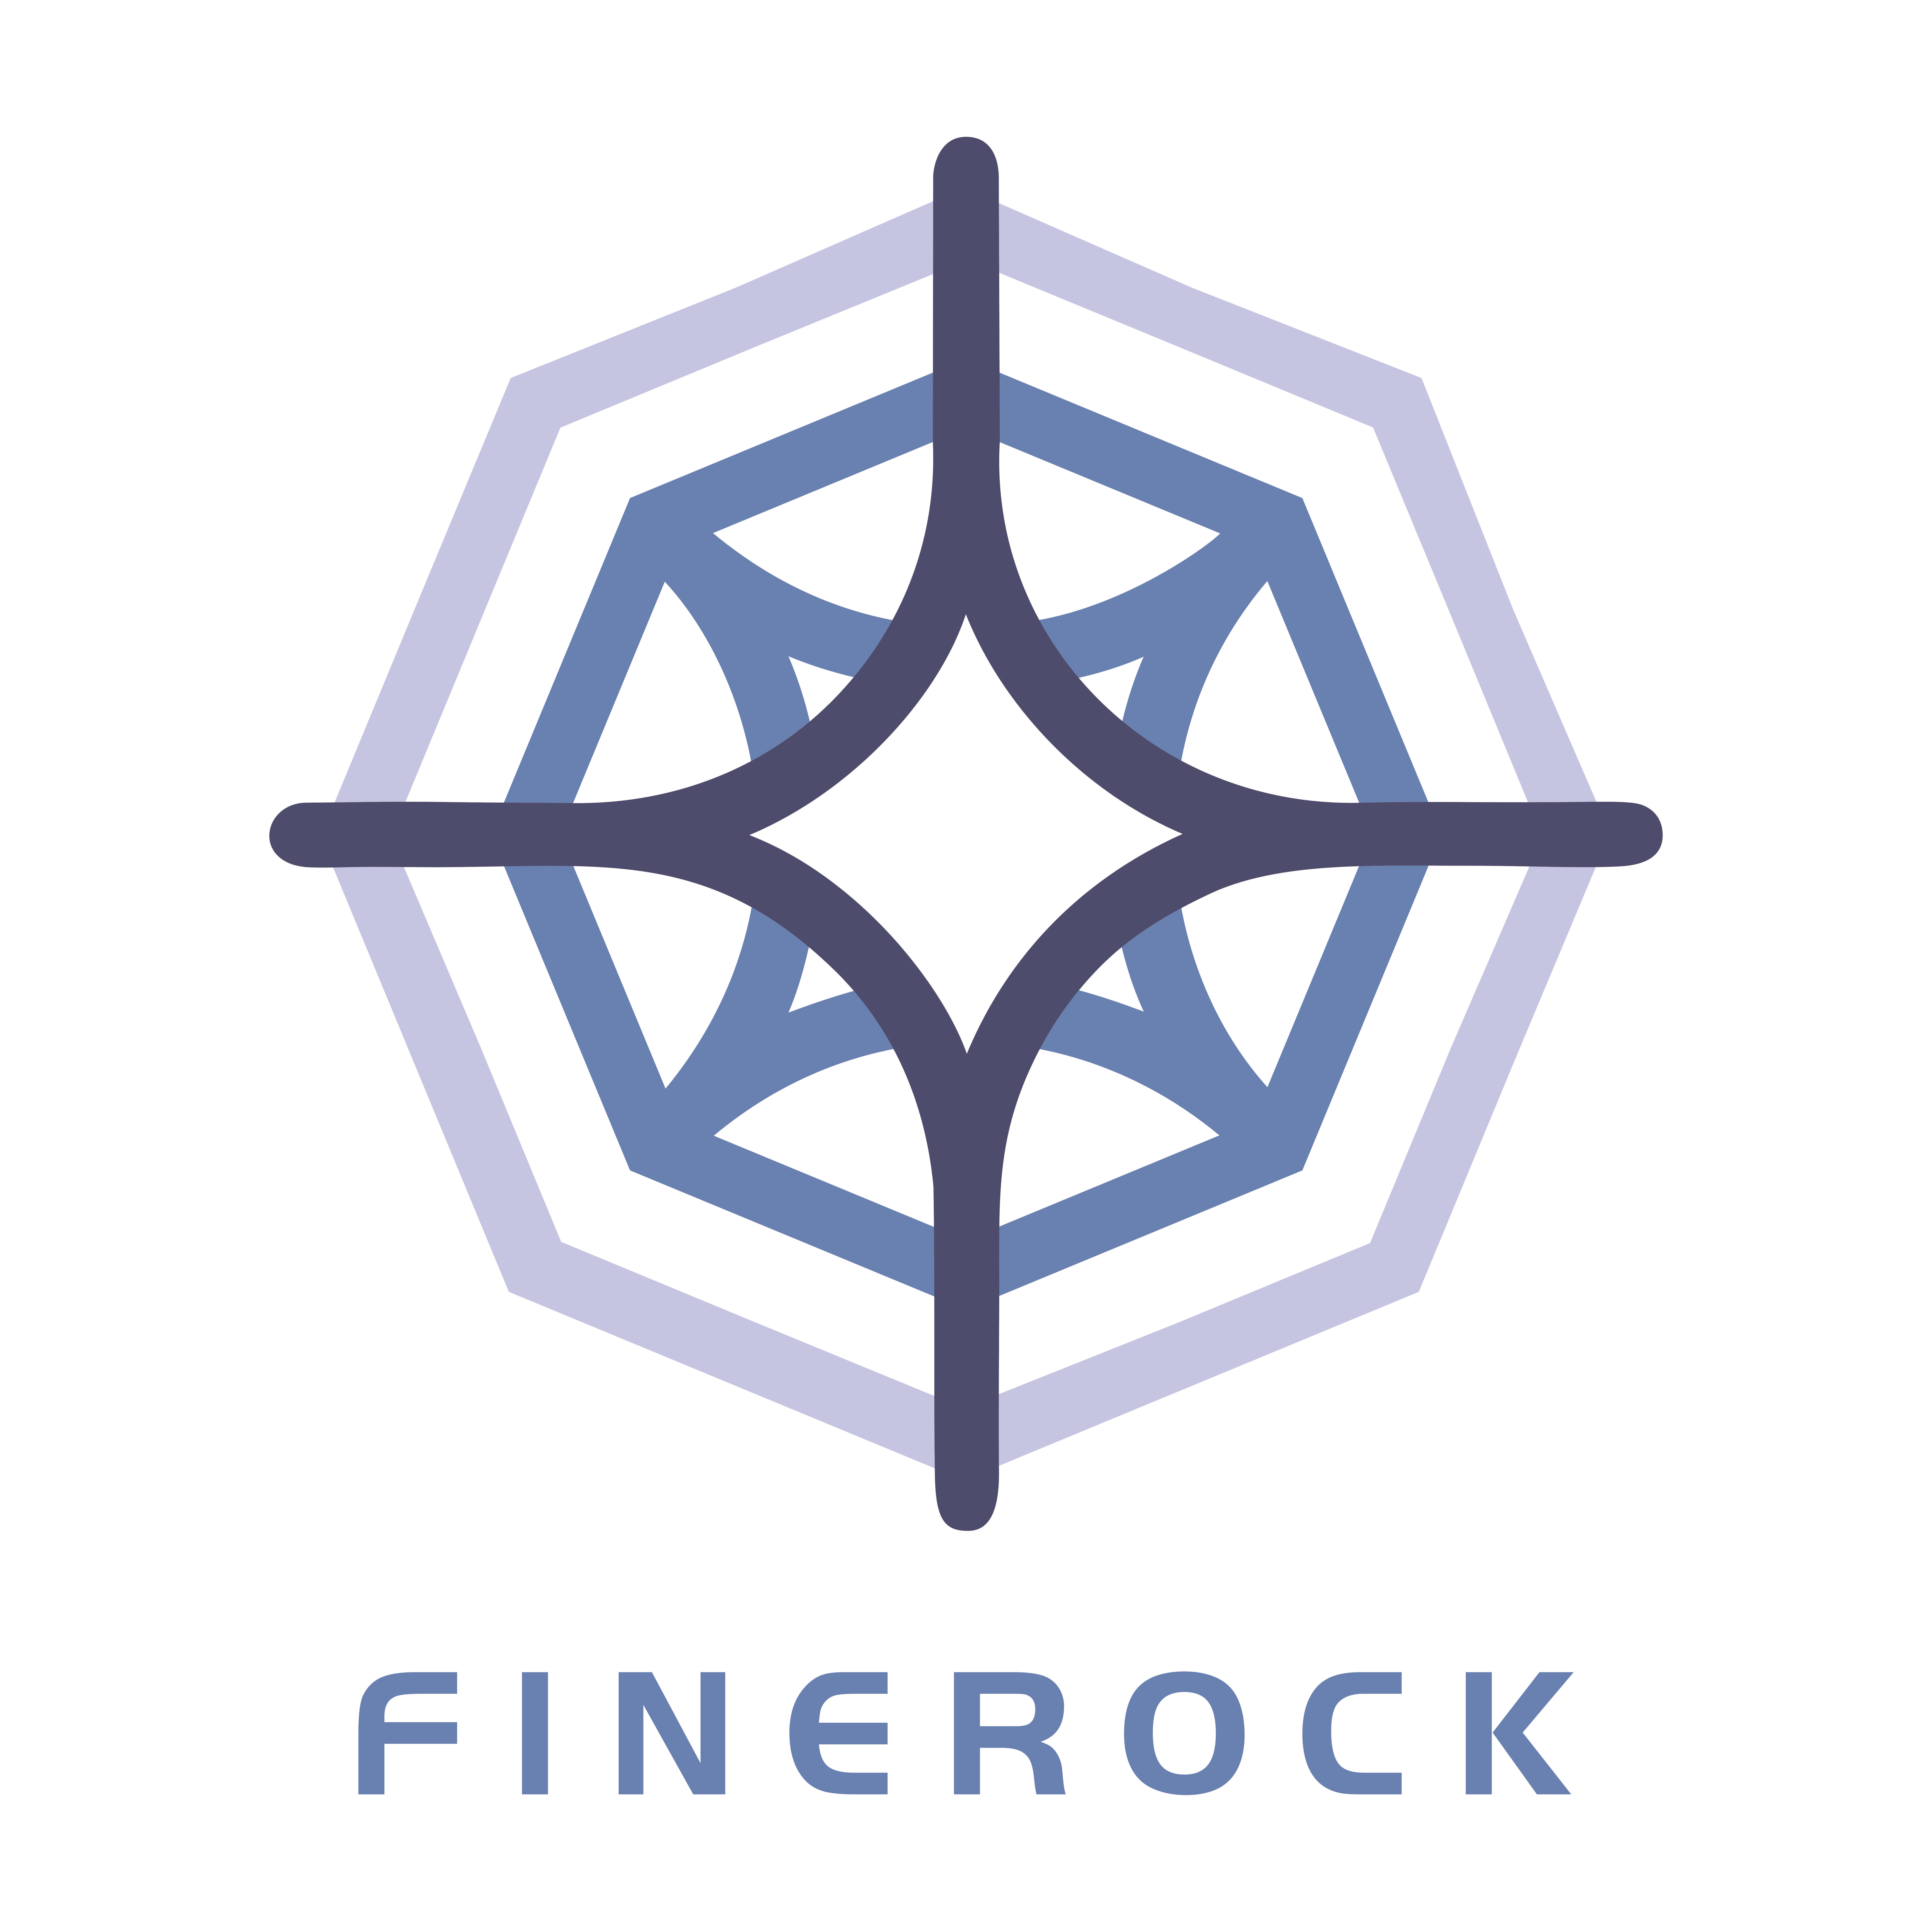 FINEROCK logo